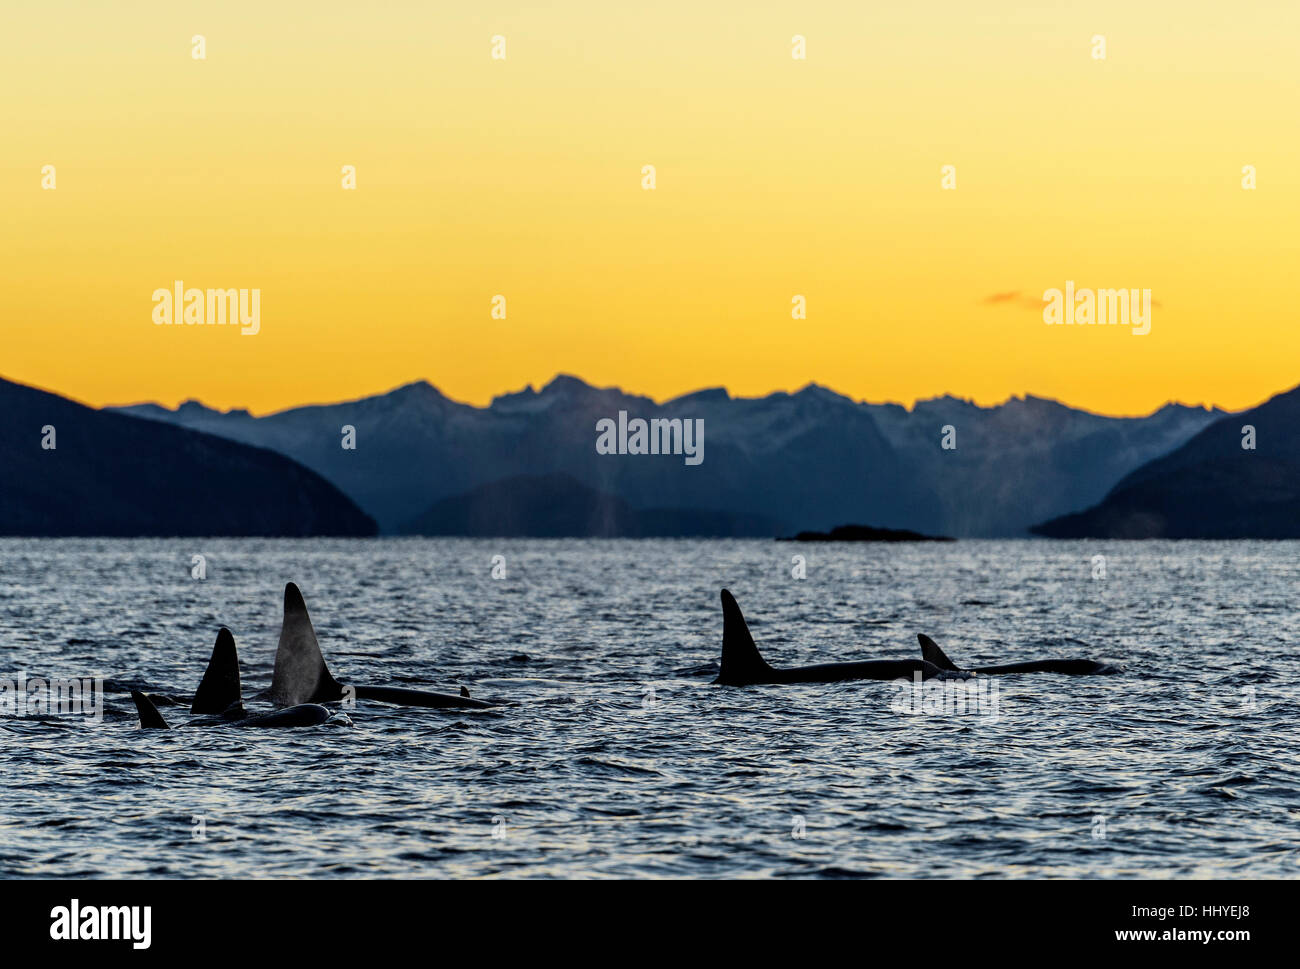 L'épaulard (Orcinus orca), Groupe, famille des animaux, coucher de soleil, les montagnes à l'arrière, Kaldfjorden, Tromvik, Norvège Banque D'Images